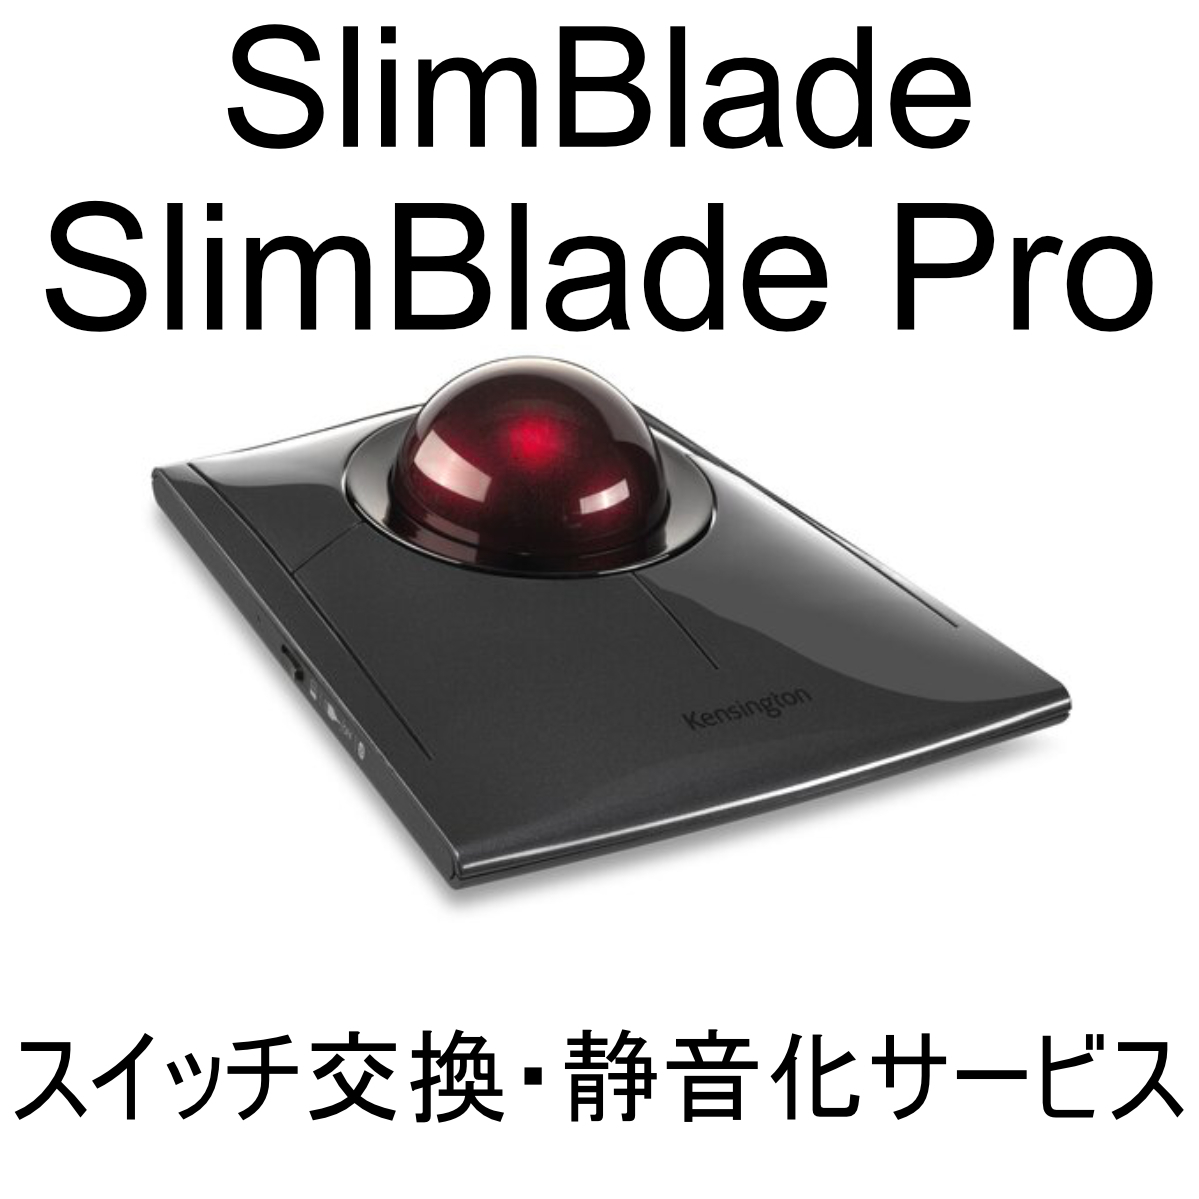 保証付き Kensington SlimBlade Pro プロ Trackball スイッチ交換 修理 代行 静音化 ケンジントン スリムブレード トラックボールマウスの画像1